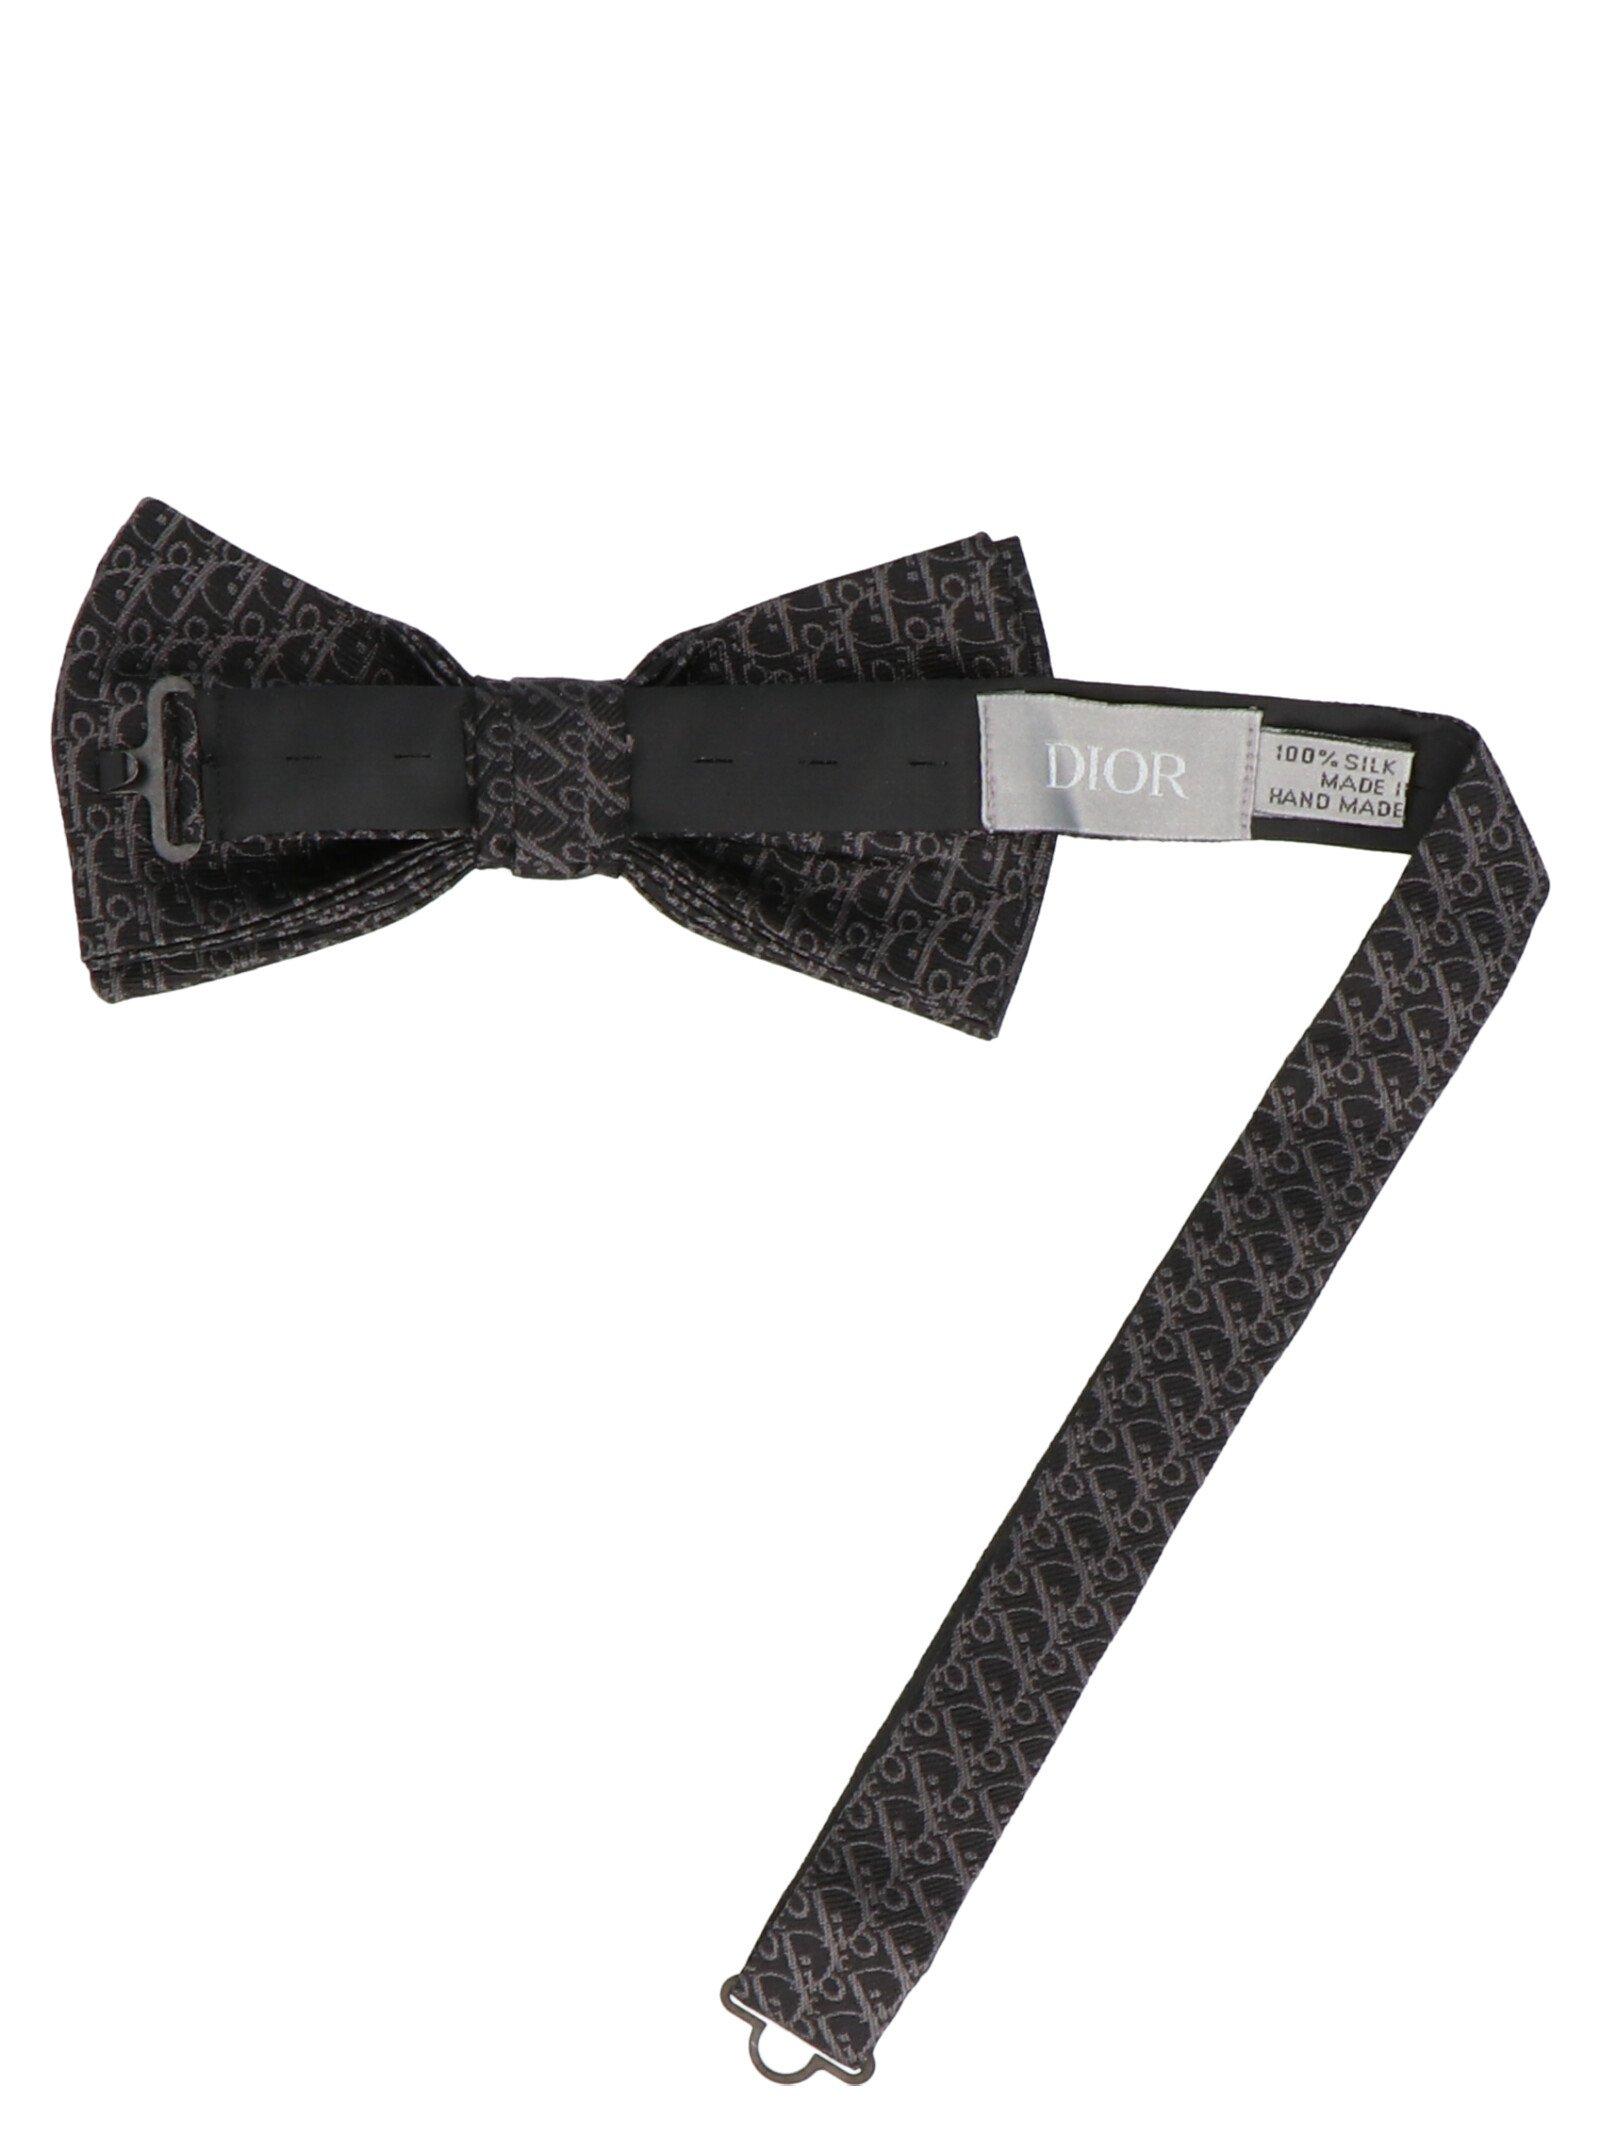 Dior Homme Silk Logo Bow Tie in Black for Men - Lyst